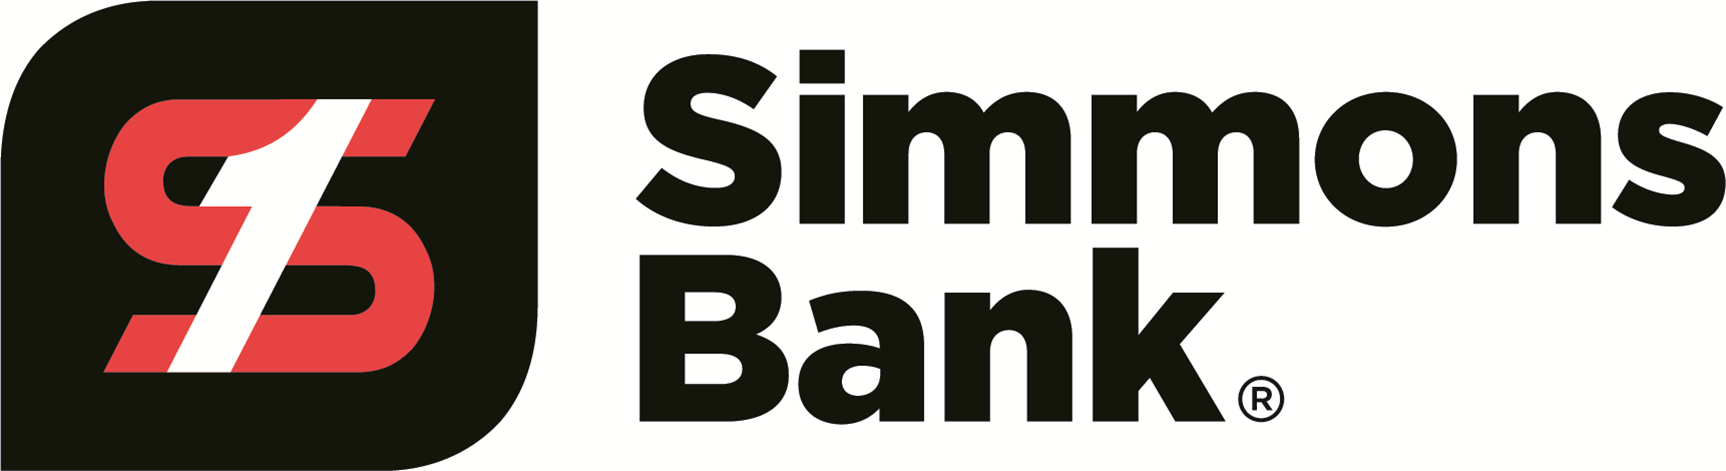 simons bank logo